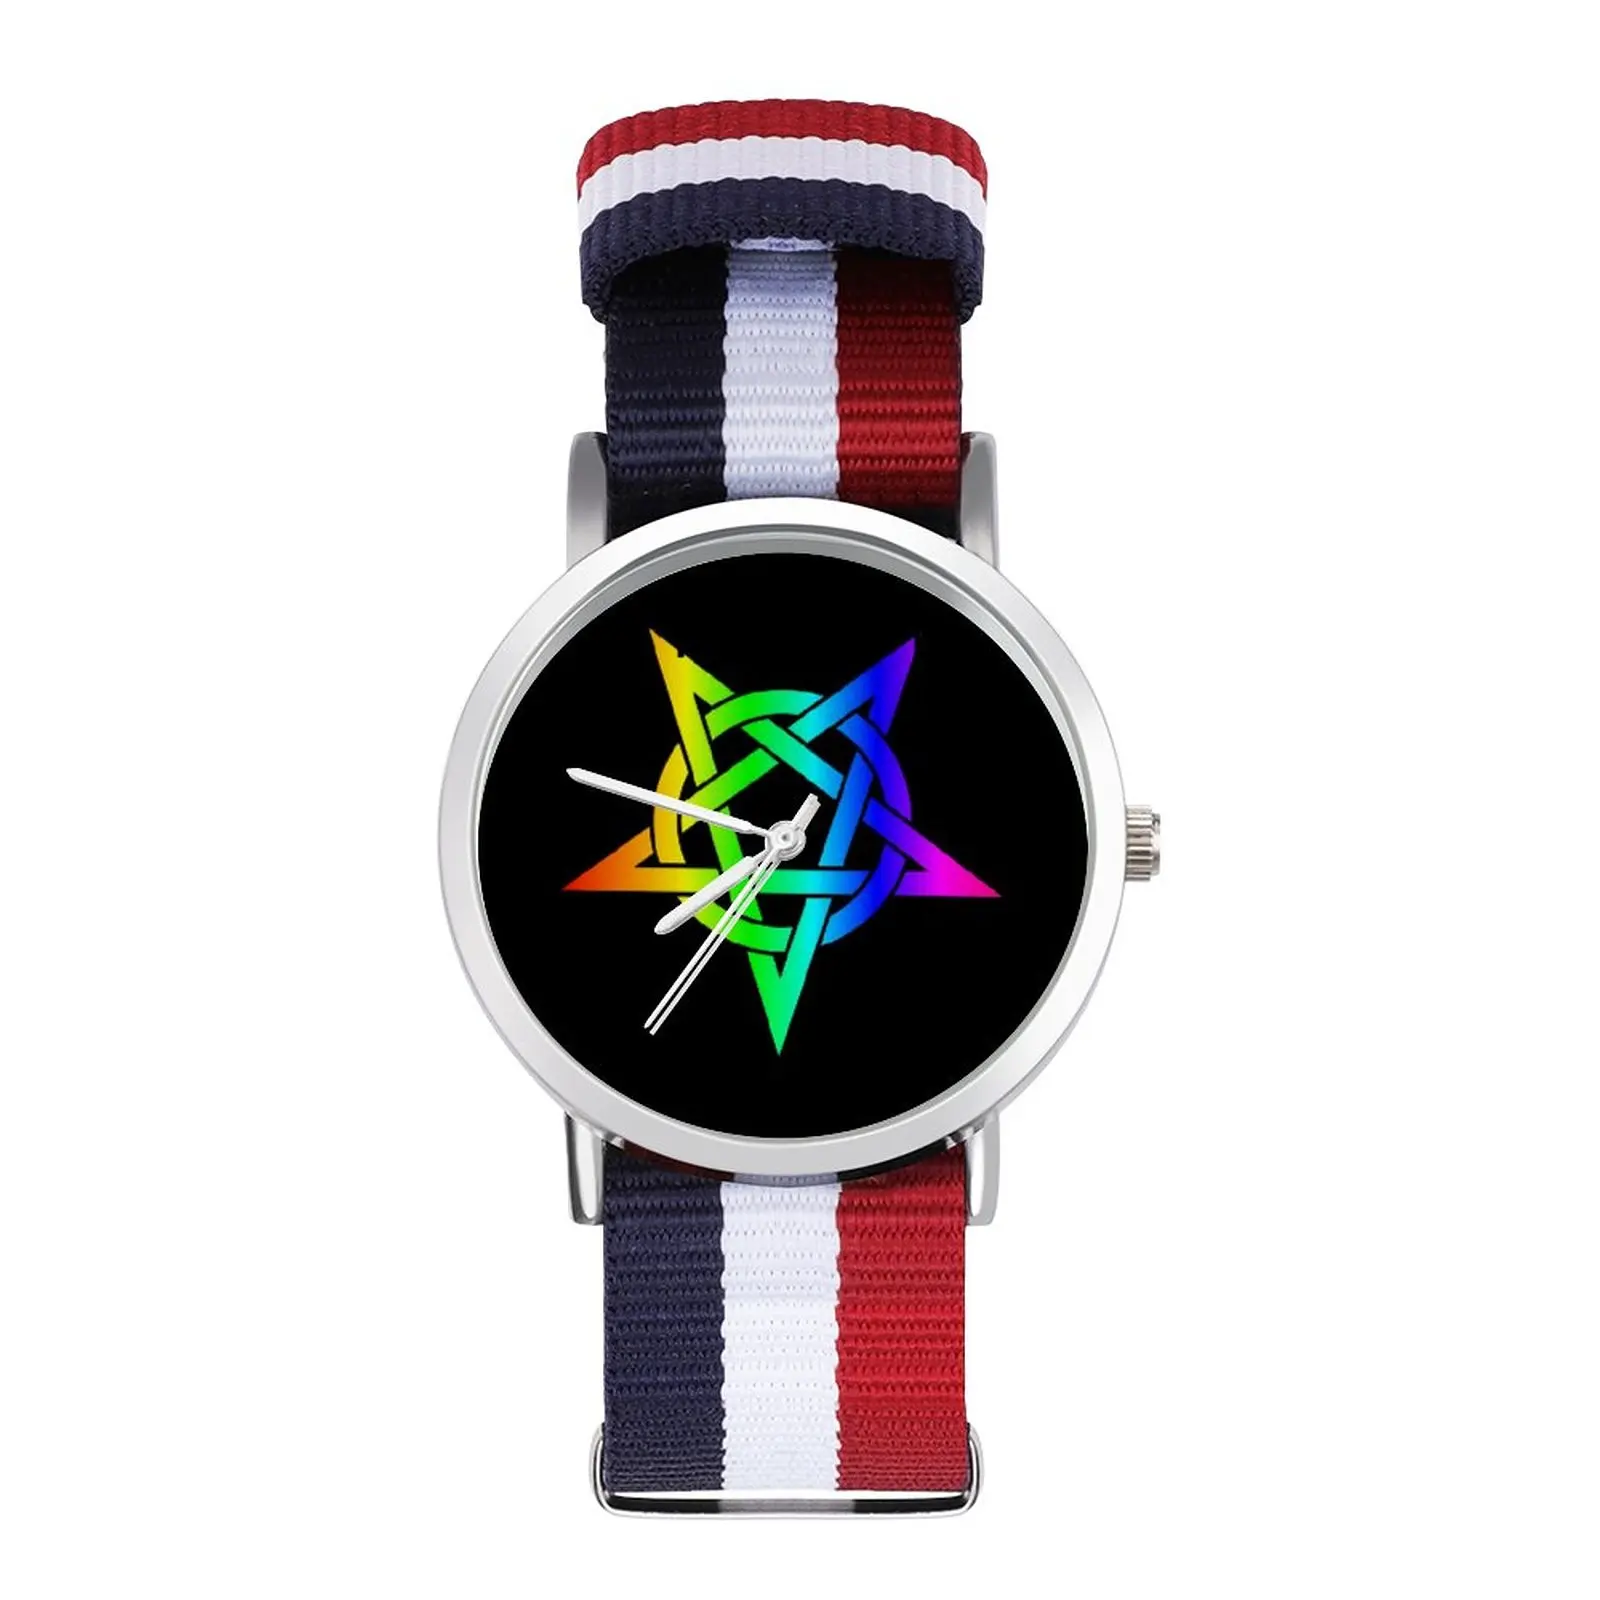 Pentagram Quartz Watch Man Business Wrist Watch Cheap Design Strong Wristwatch